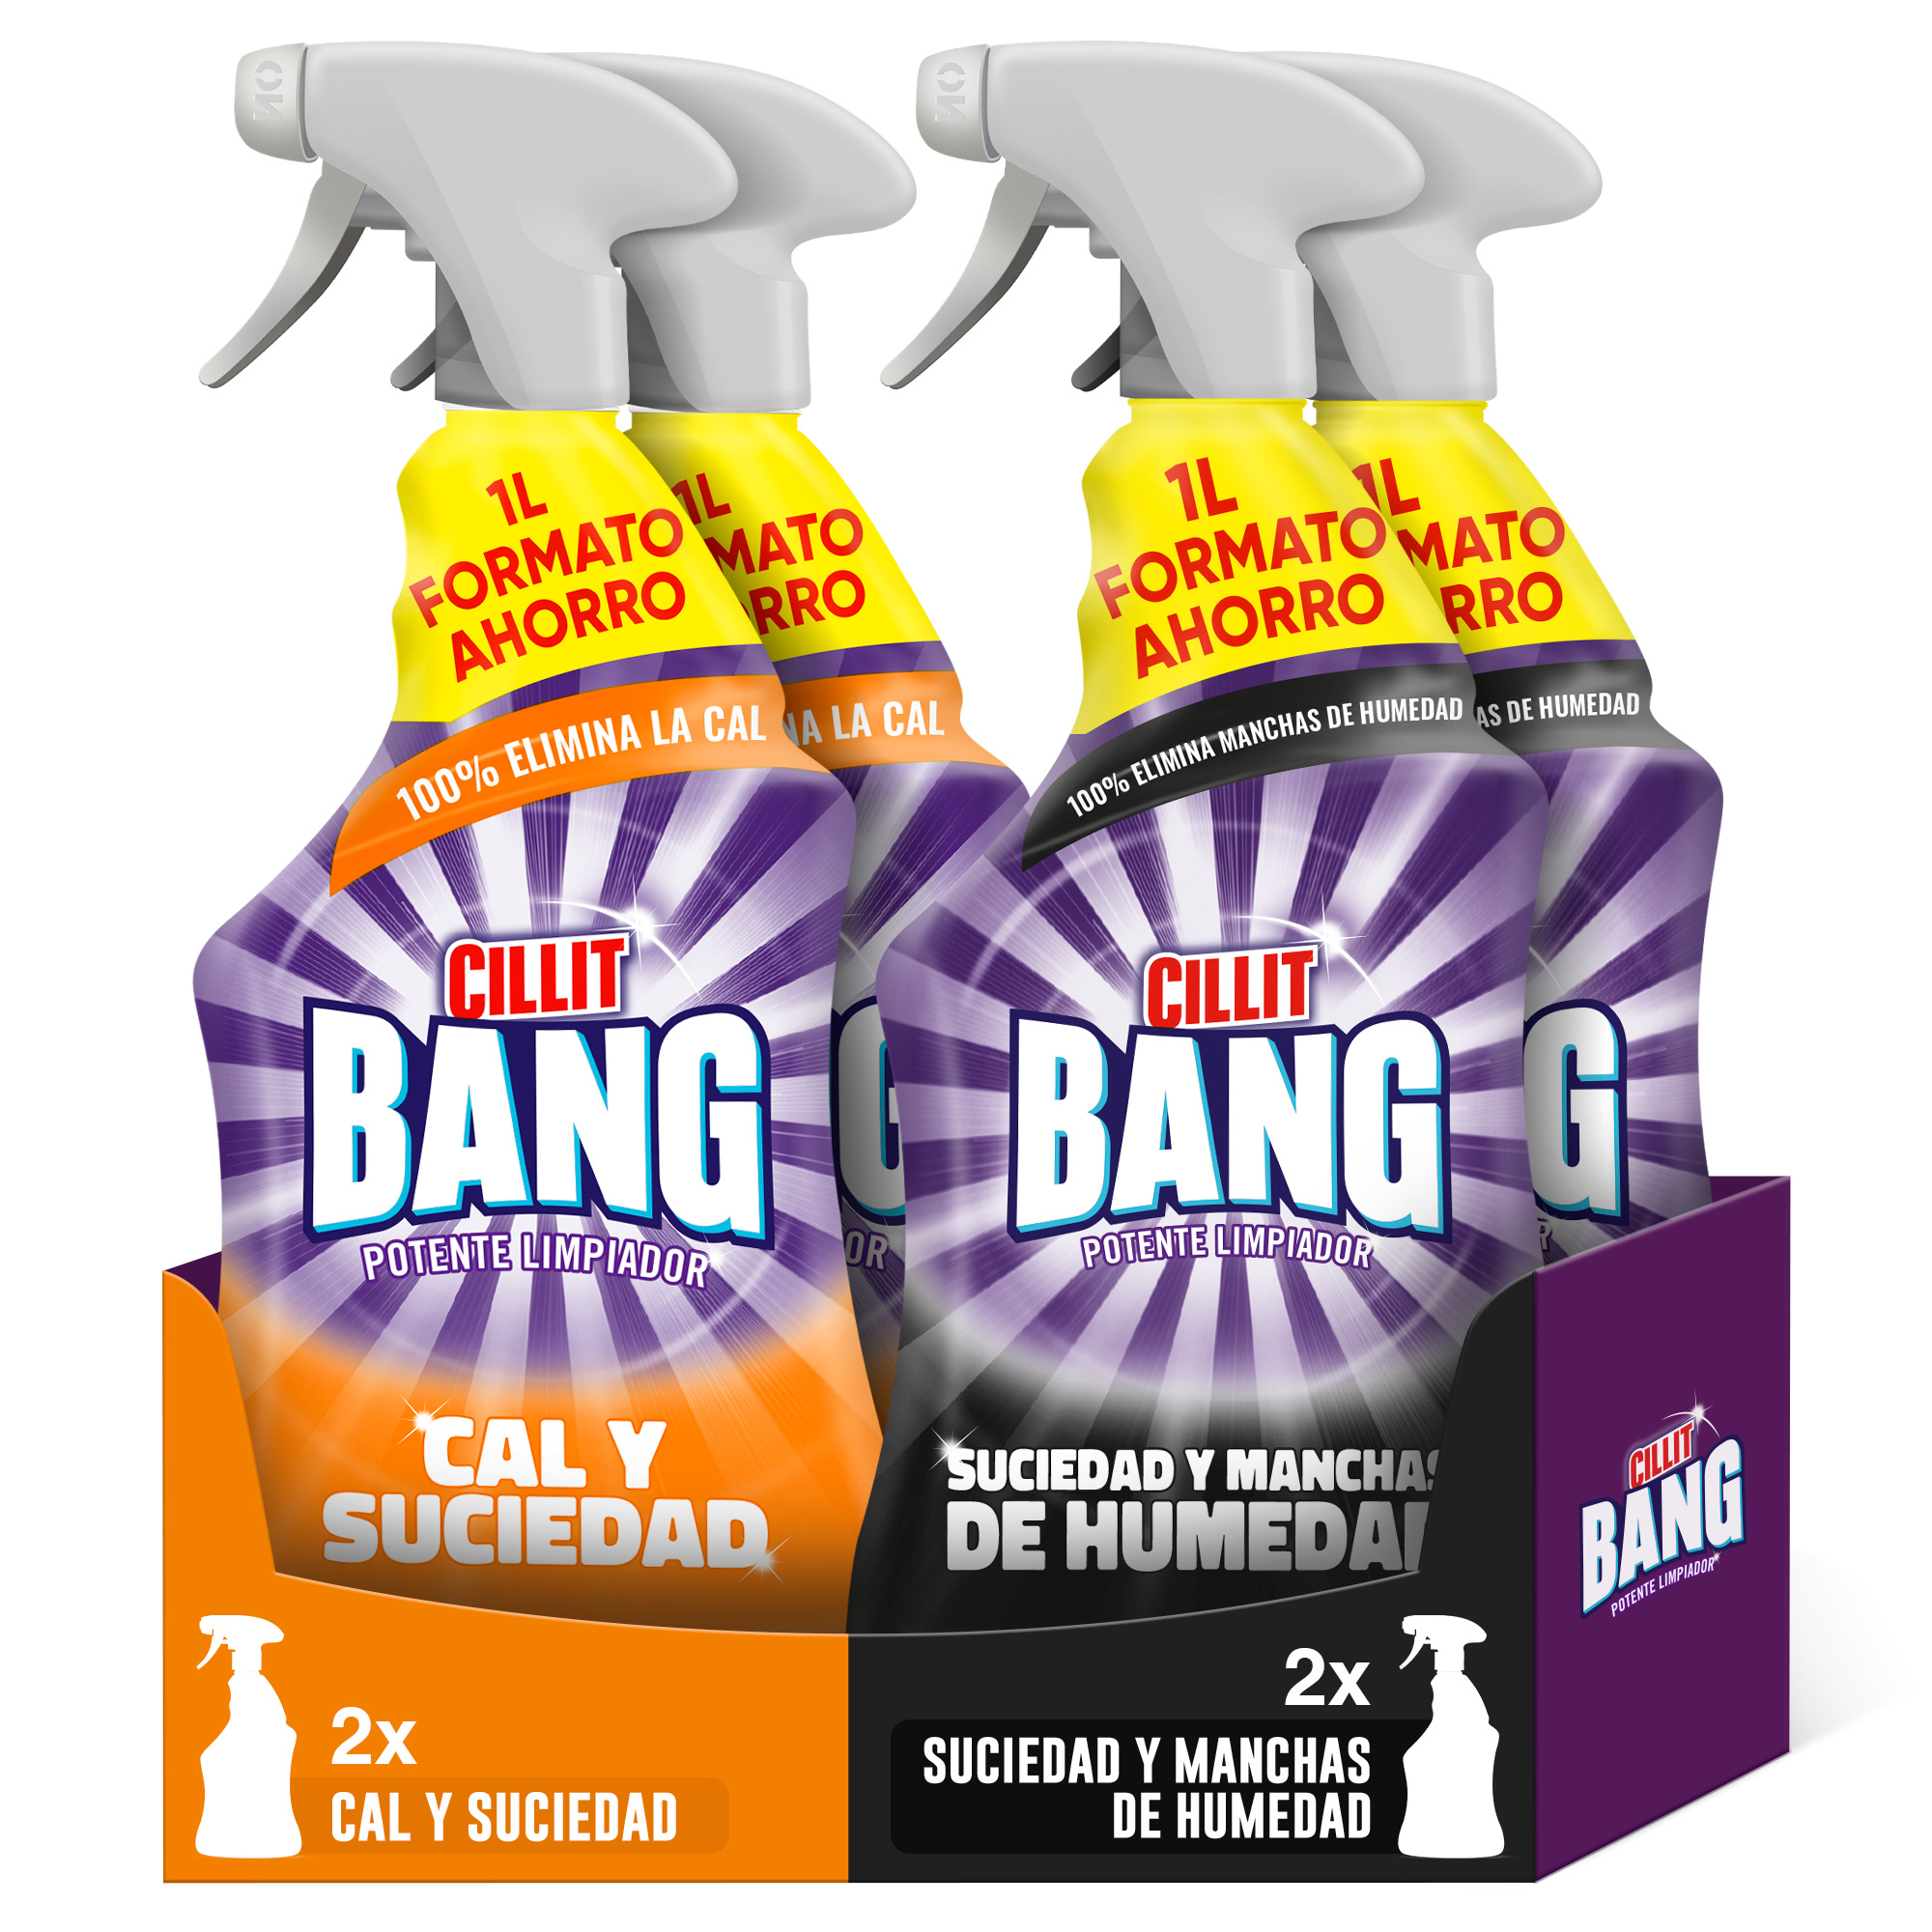 Cillit Bang Spray Limpiador de Suciedad y Humedad, potente limpiador de  juntas negras, pack de 3 sprays de 750ml